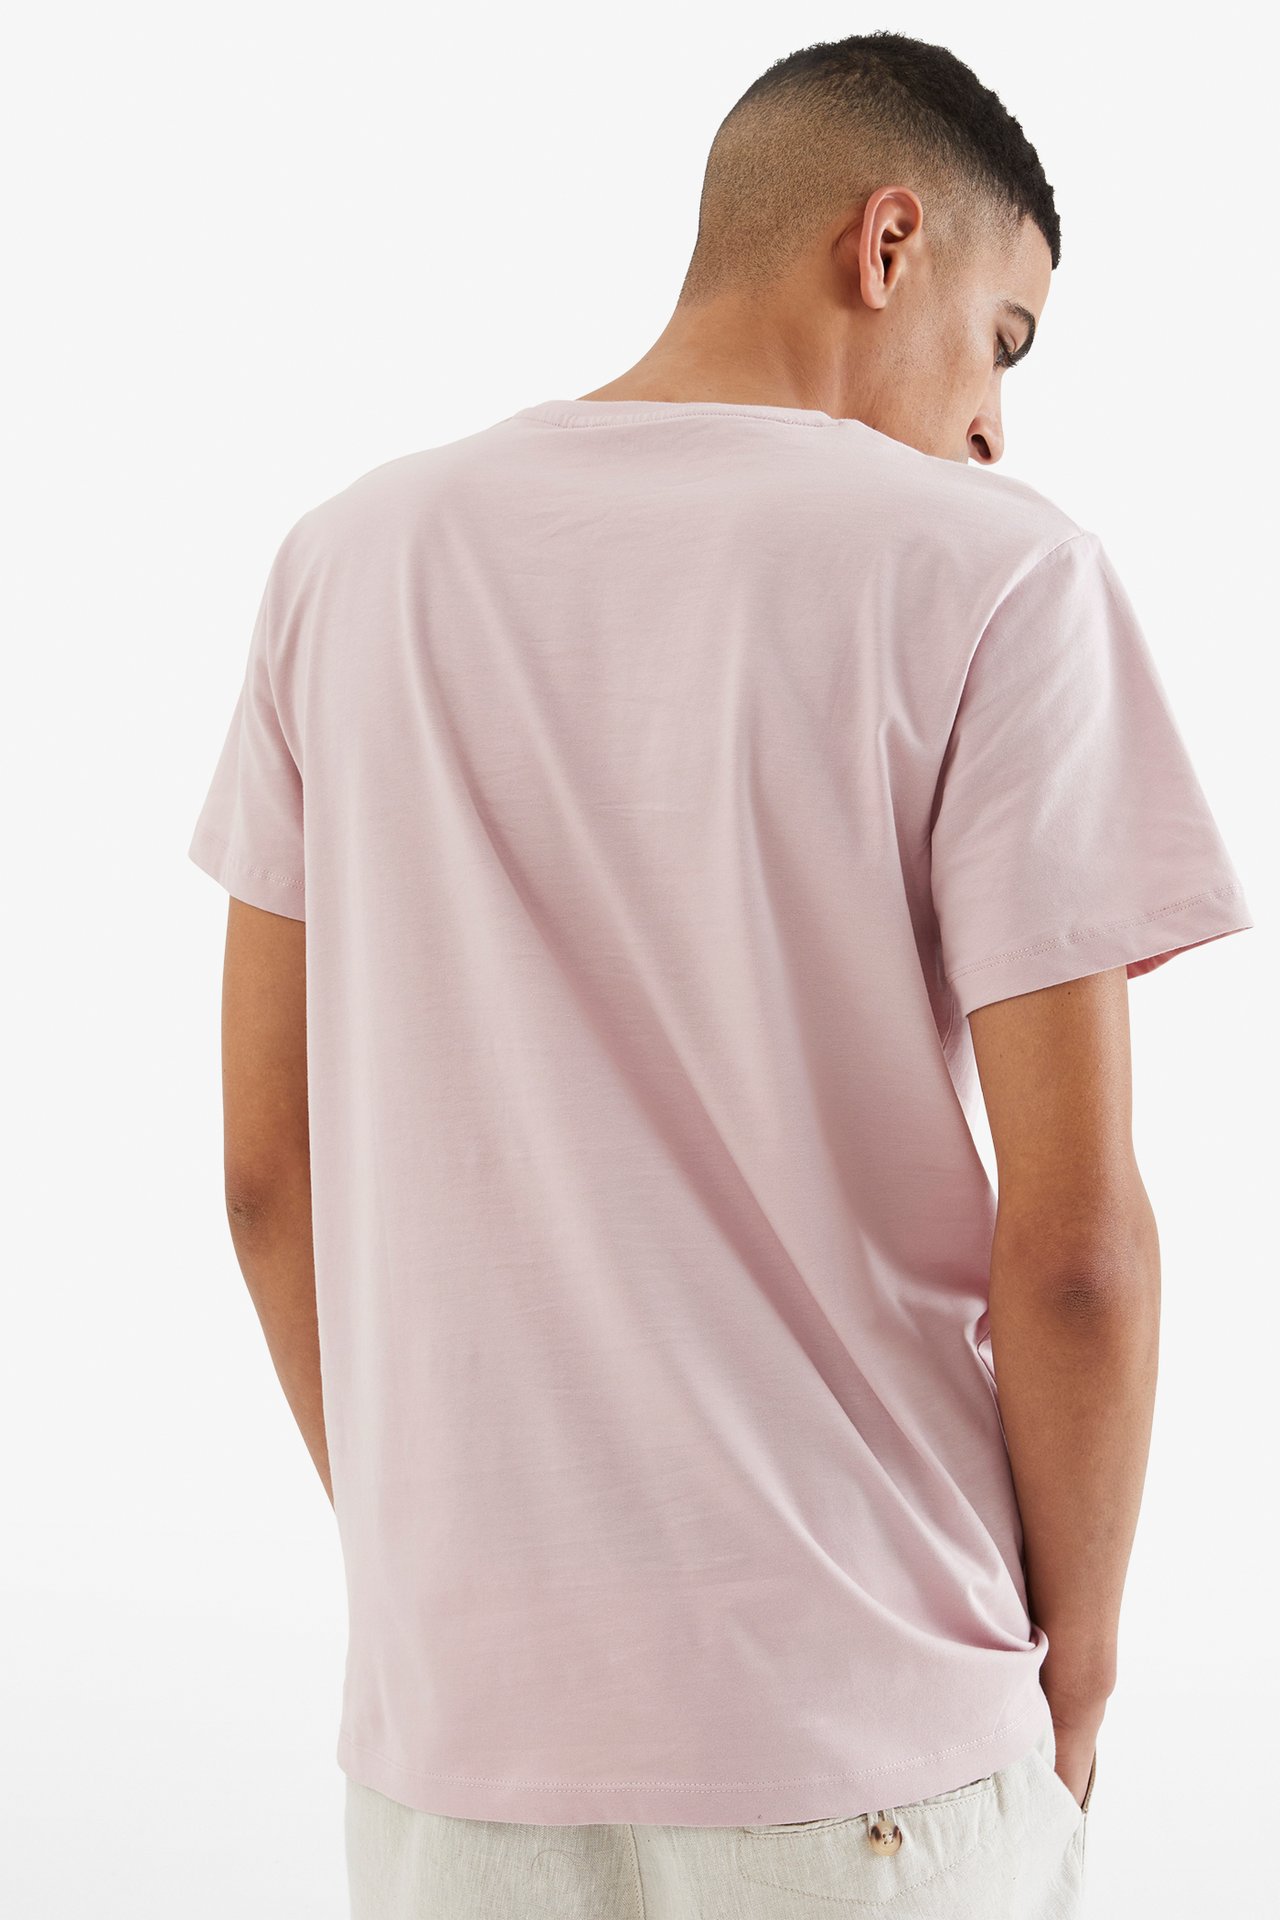 T-paita, jossa pyöreä pääntie - Vaaleanpunainen - 3